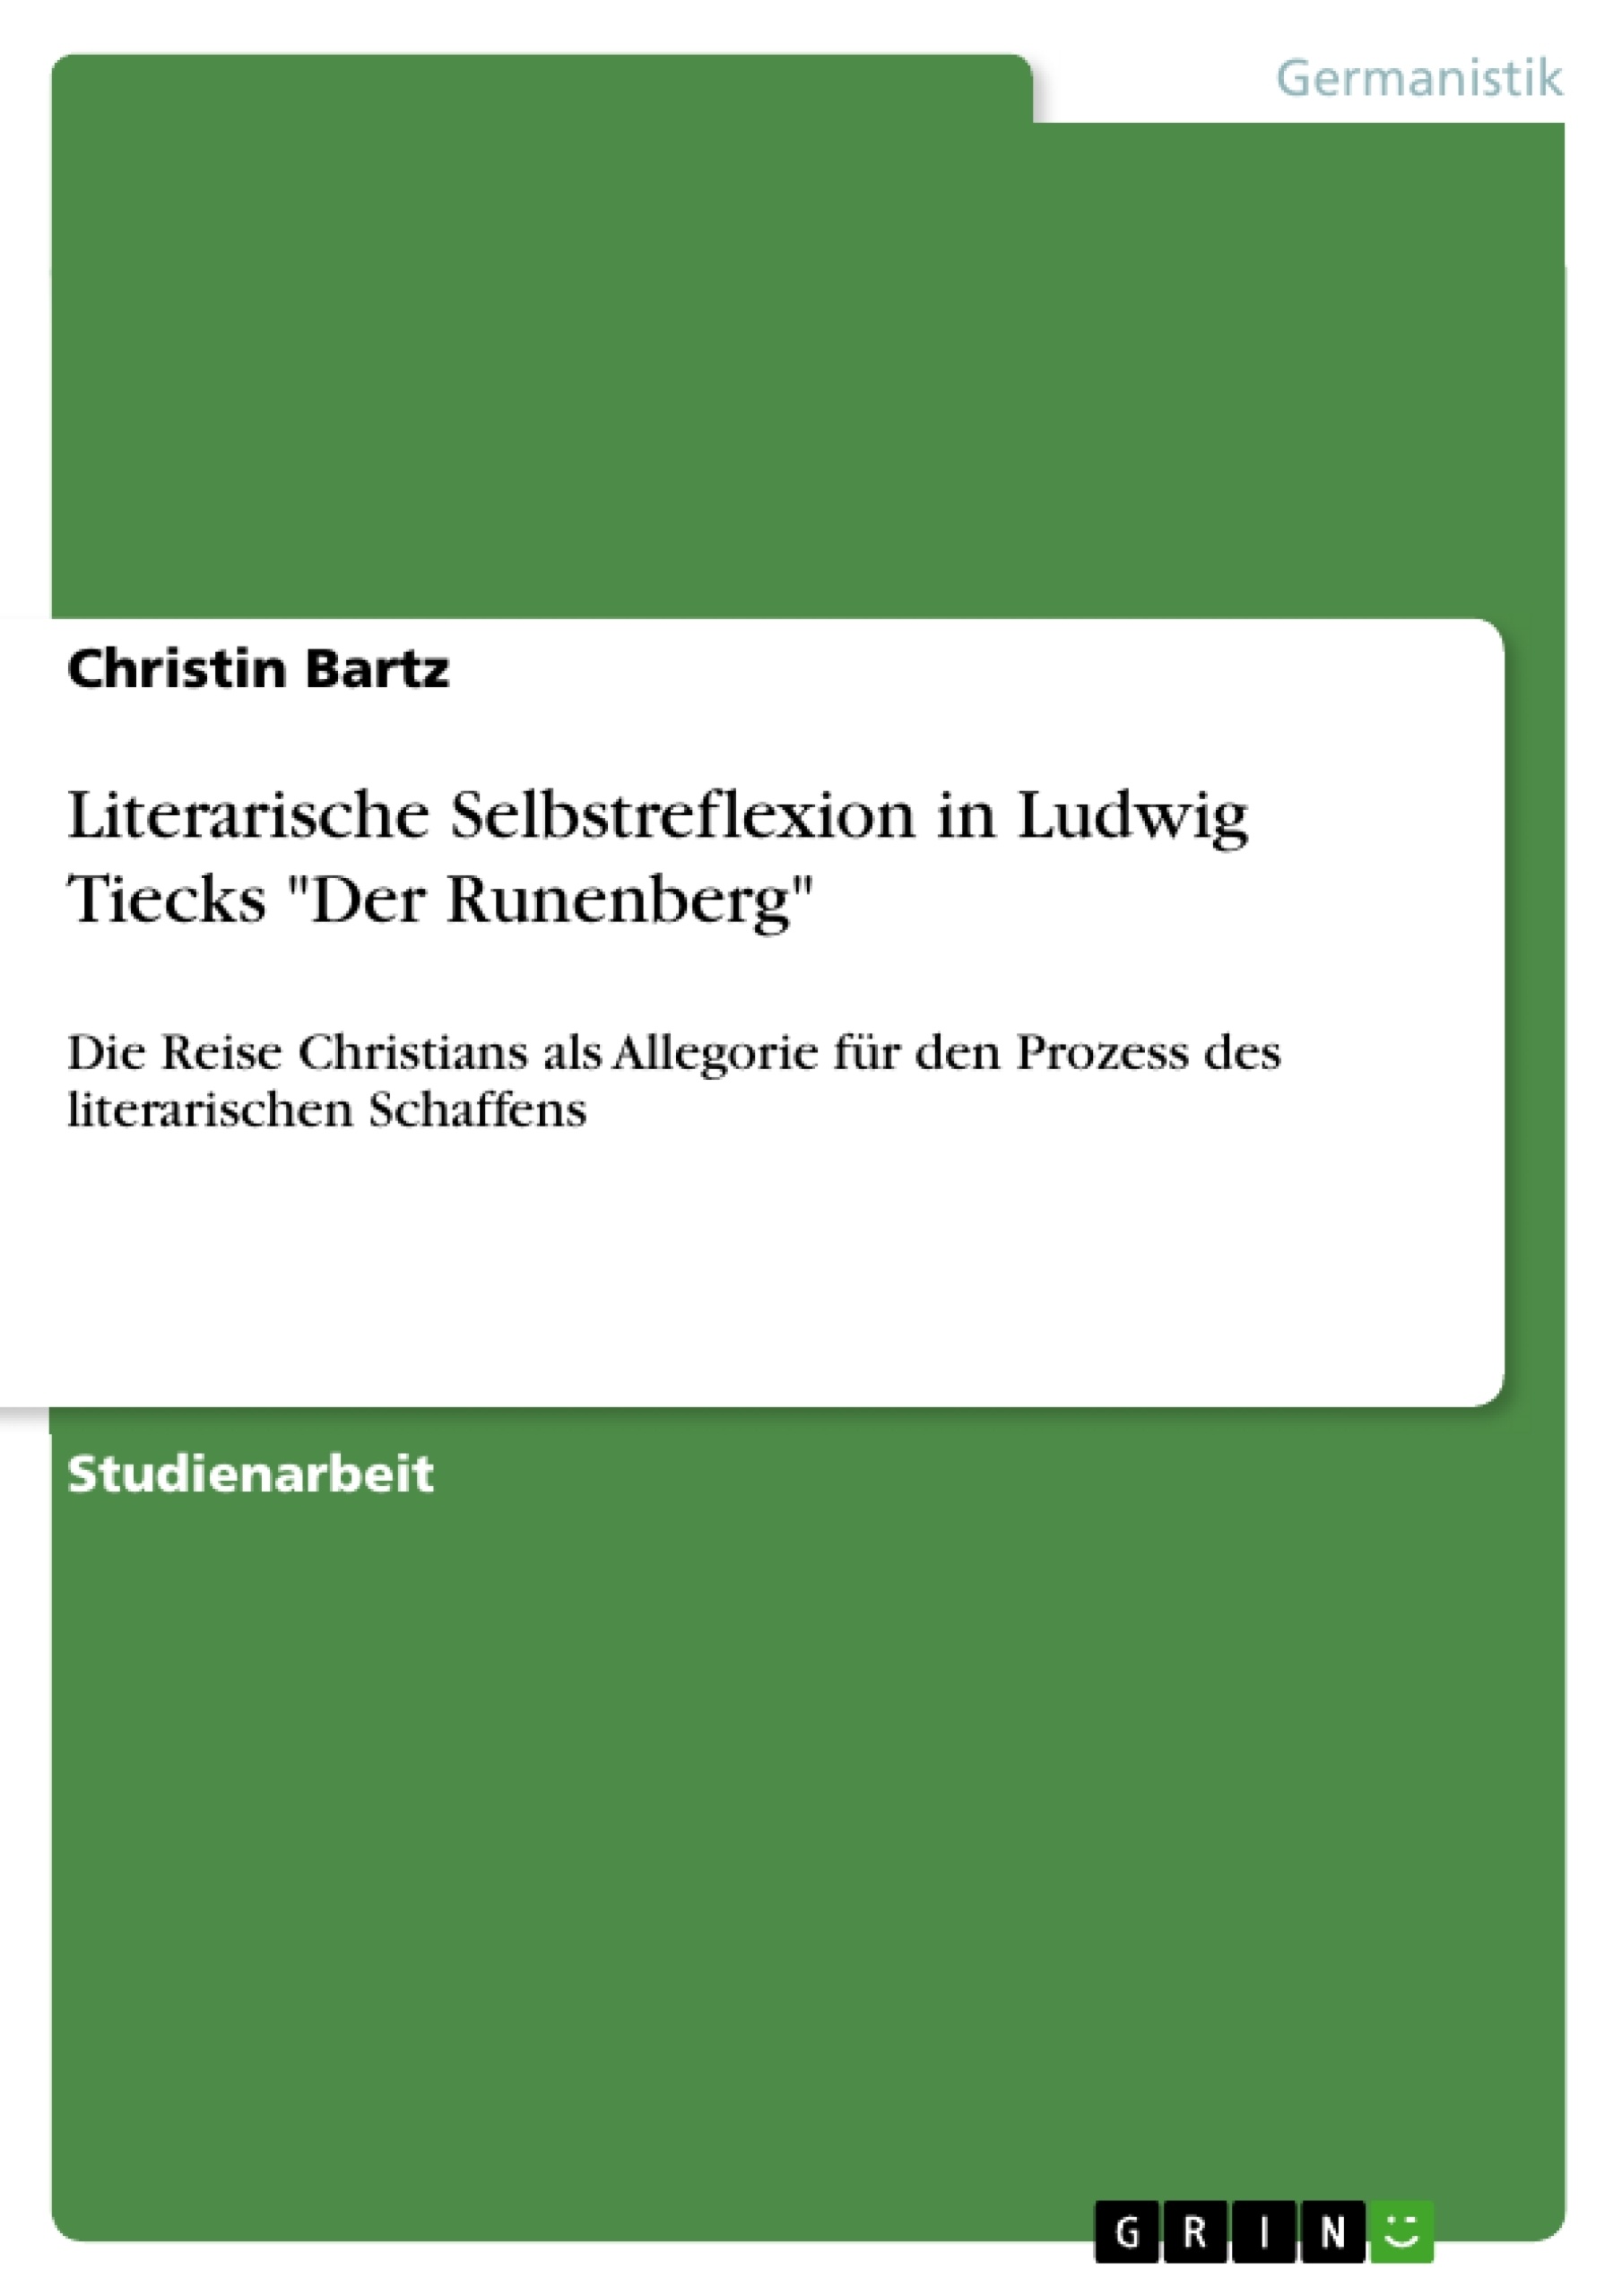 Título: Literarische Selbstreflexion in Ludwig Tiecks "Der Runenberg"